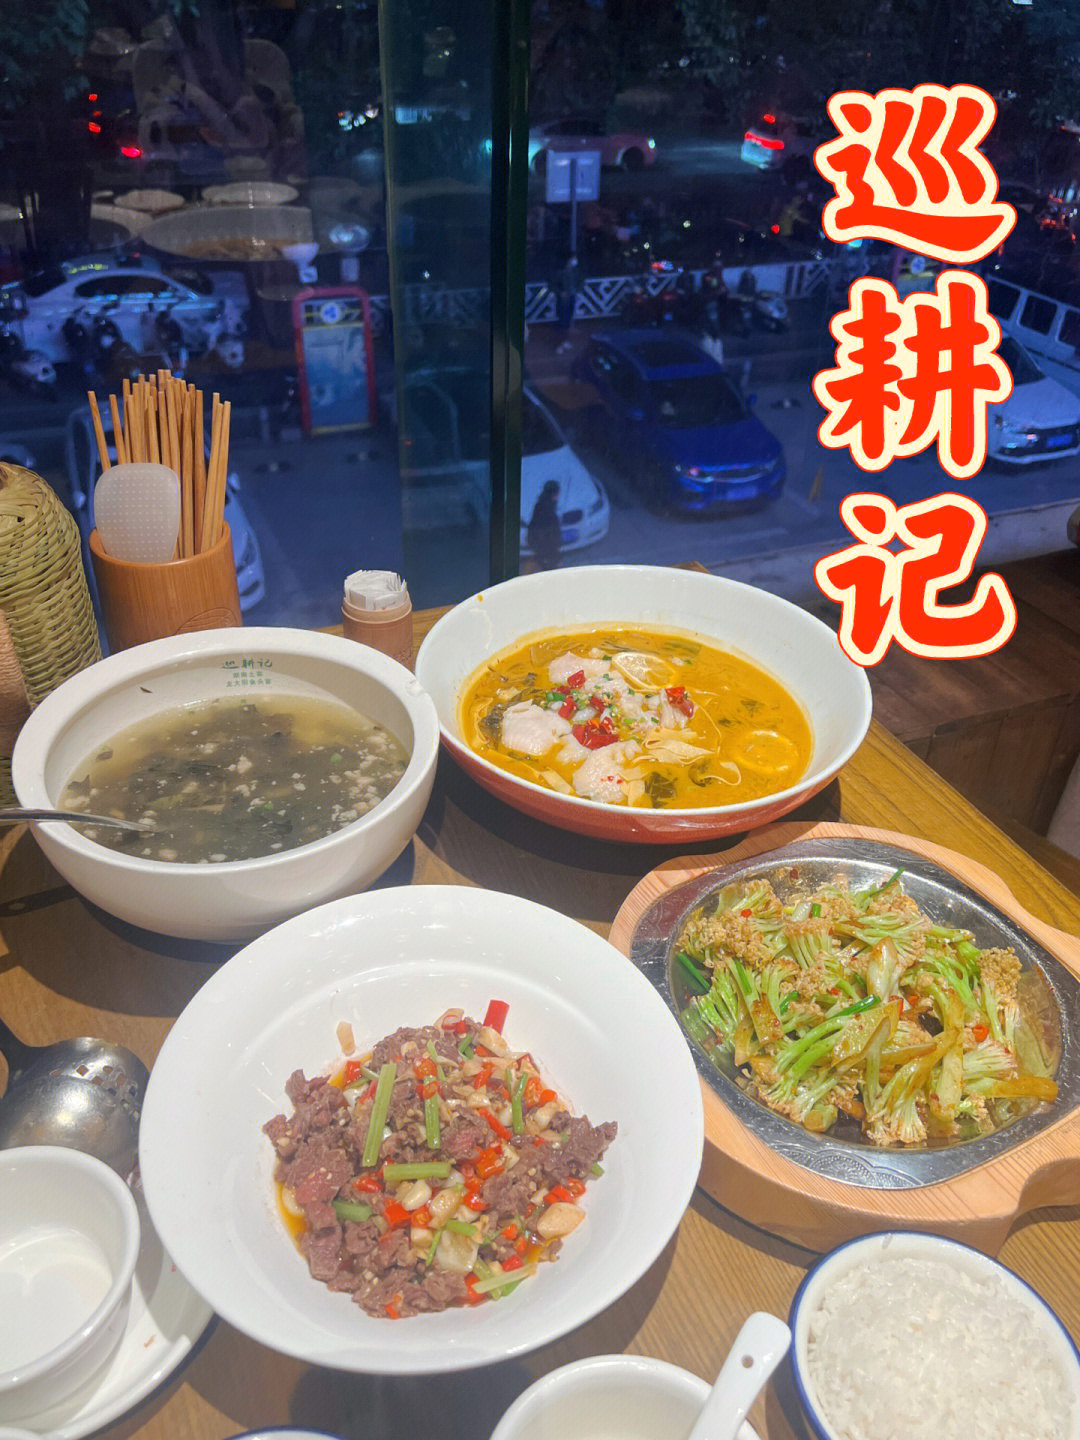 店里主要是湘菜农家菜系,可以根据不同口味选择辣度,各种土鸡土鸭咸菜